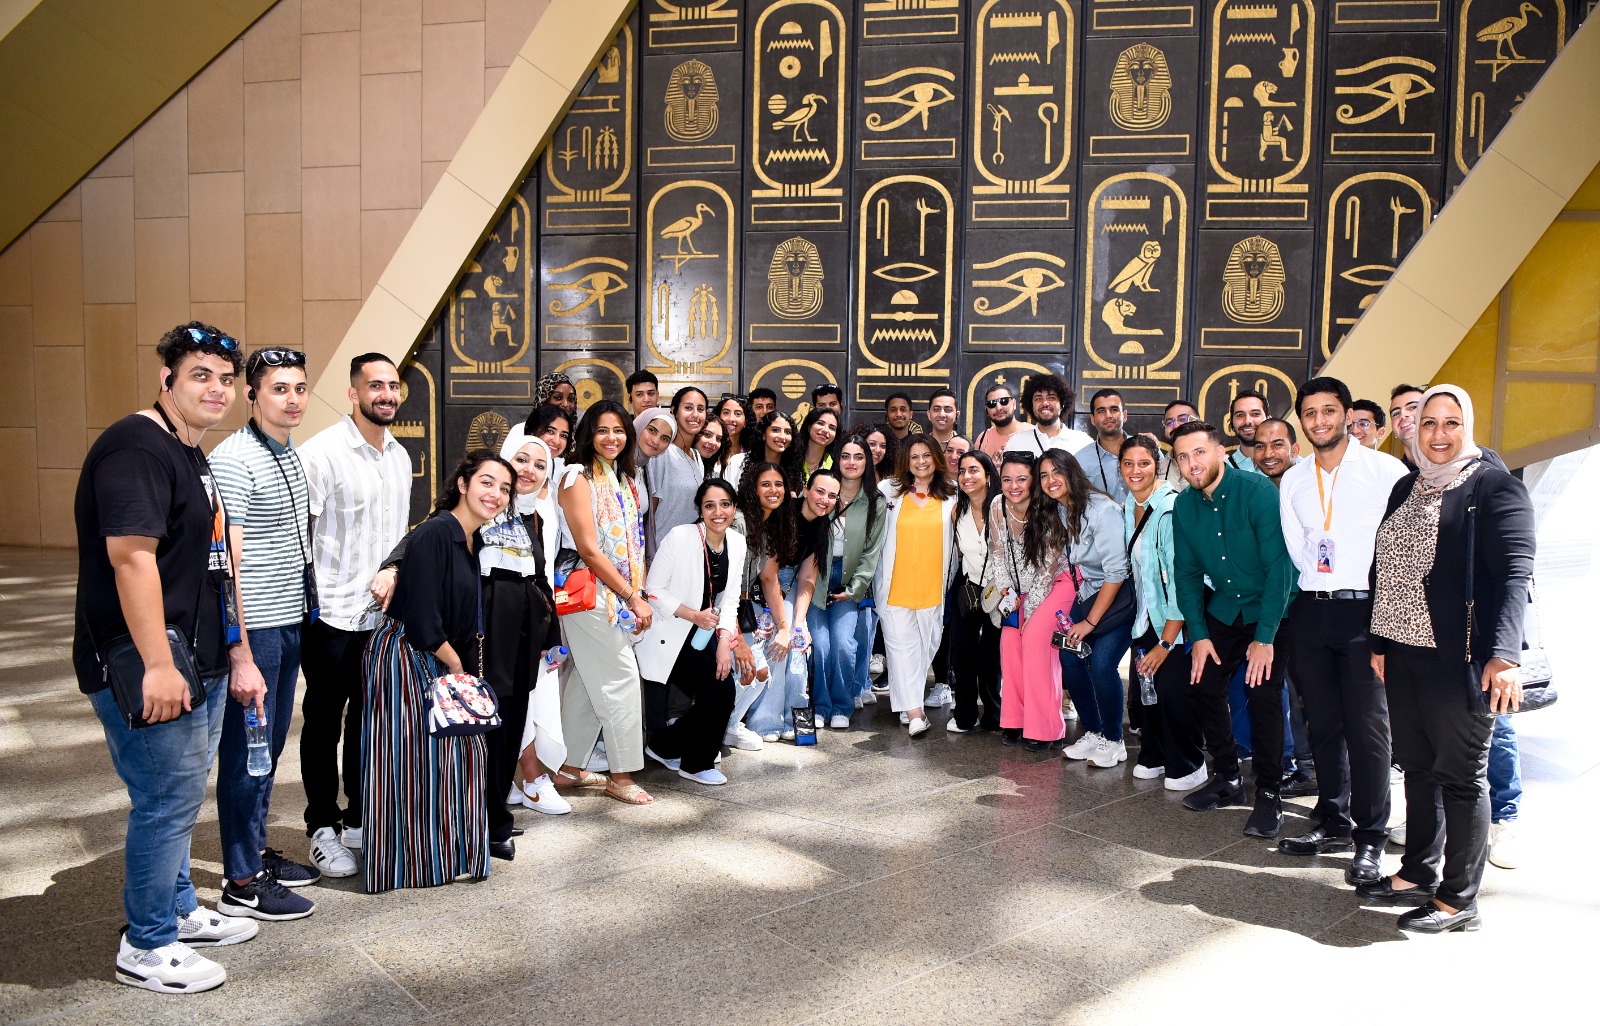  شباب الدارسين بالخارج في المتحف المصري الكبير